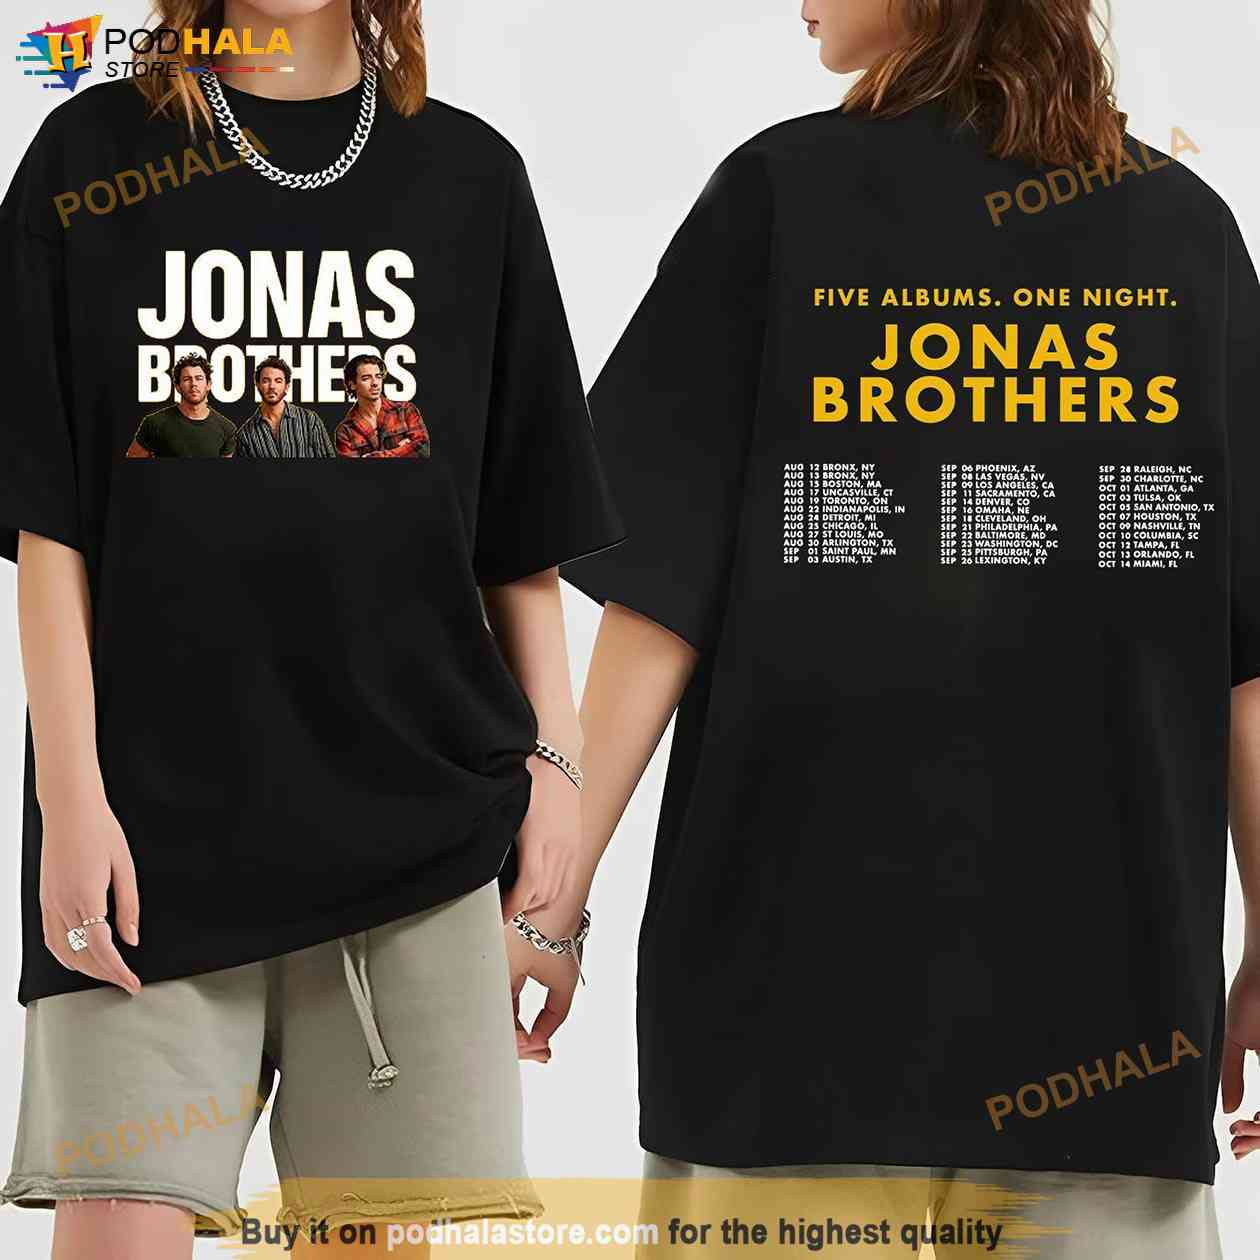 jonas brothers 5 albums tour merch